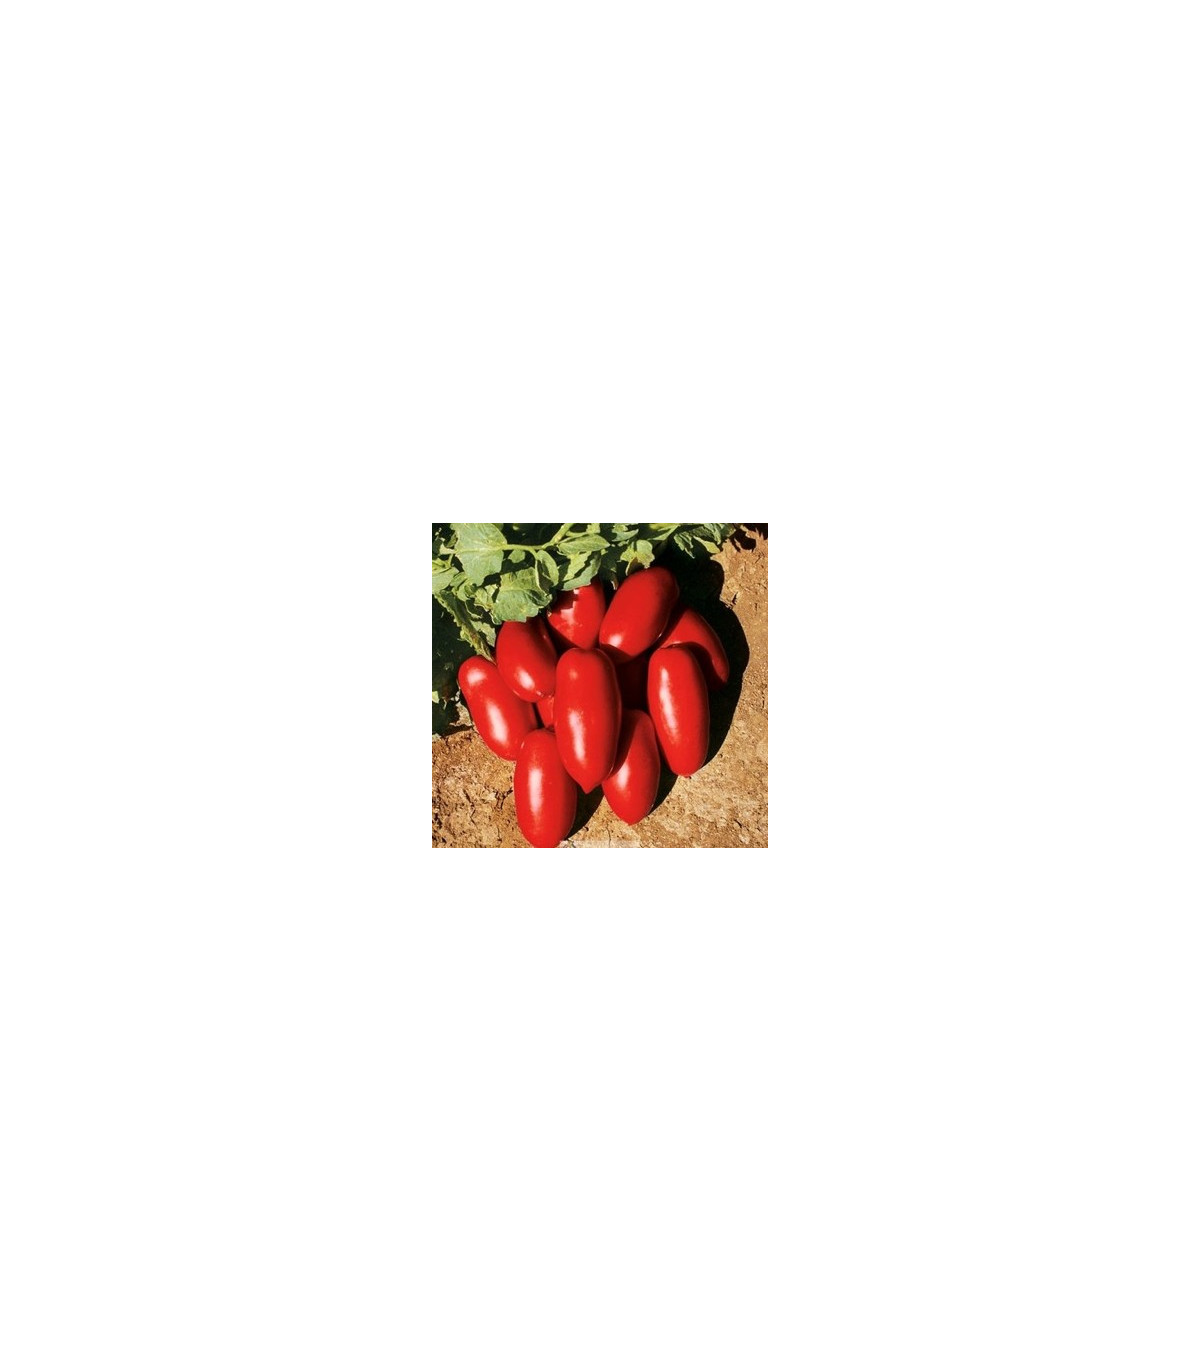 BIO Paradajka kríčková Inka F1 - Lycopersicon esculentum - semená paradajky - 10 ks